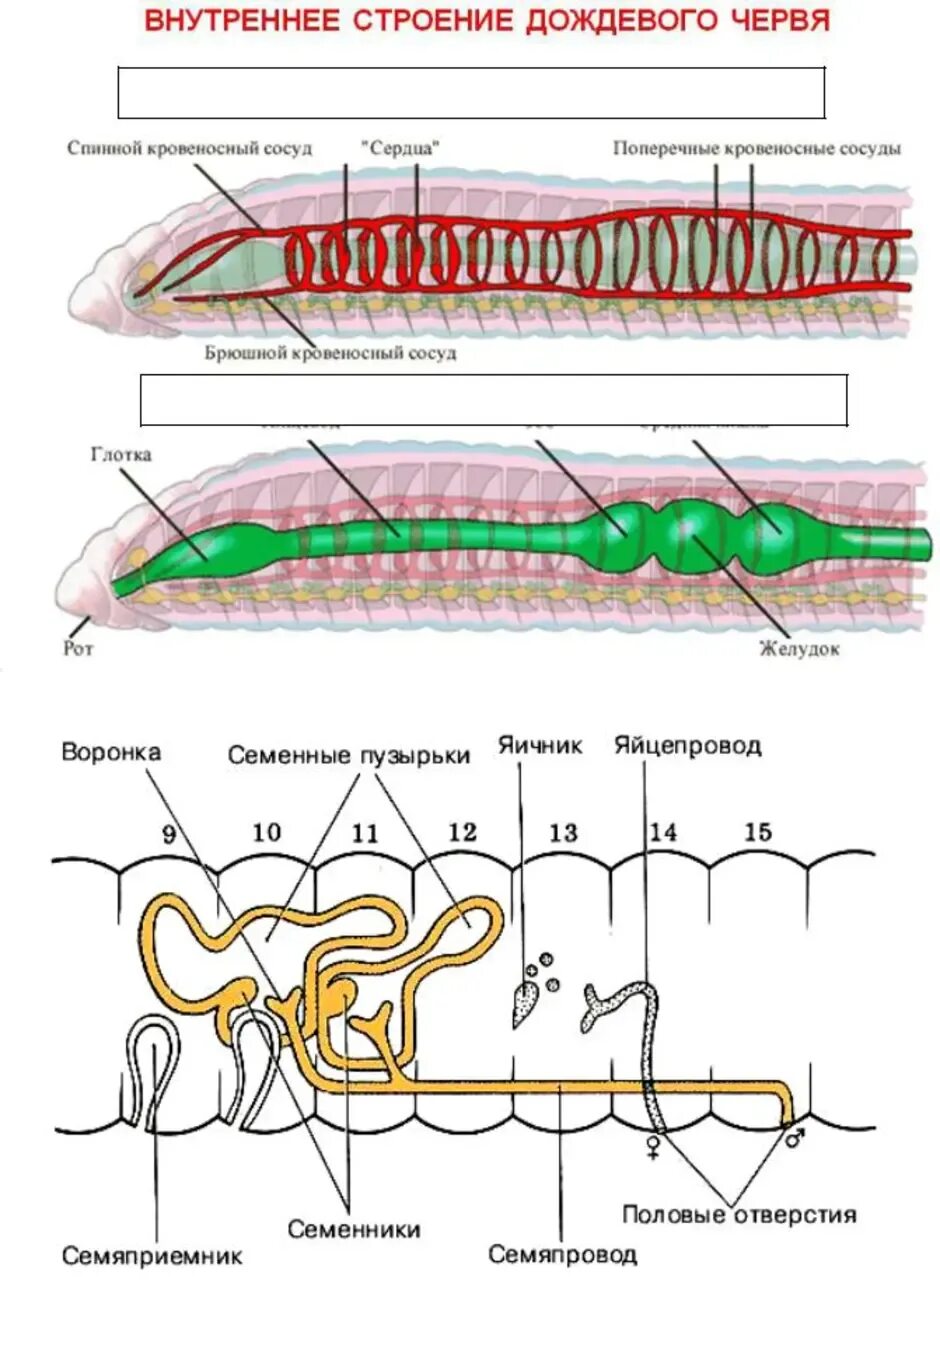 Строение половой системы дождевого червя. Внутреннее строение дождевого червя системы органов. Системы дождевого червя таблица. Кольчатый червь строение половой системы. Пищеварительная система органов кольчатых червей